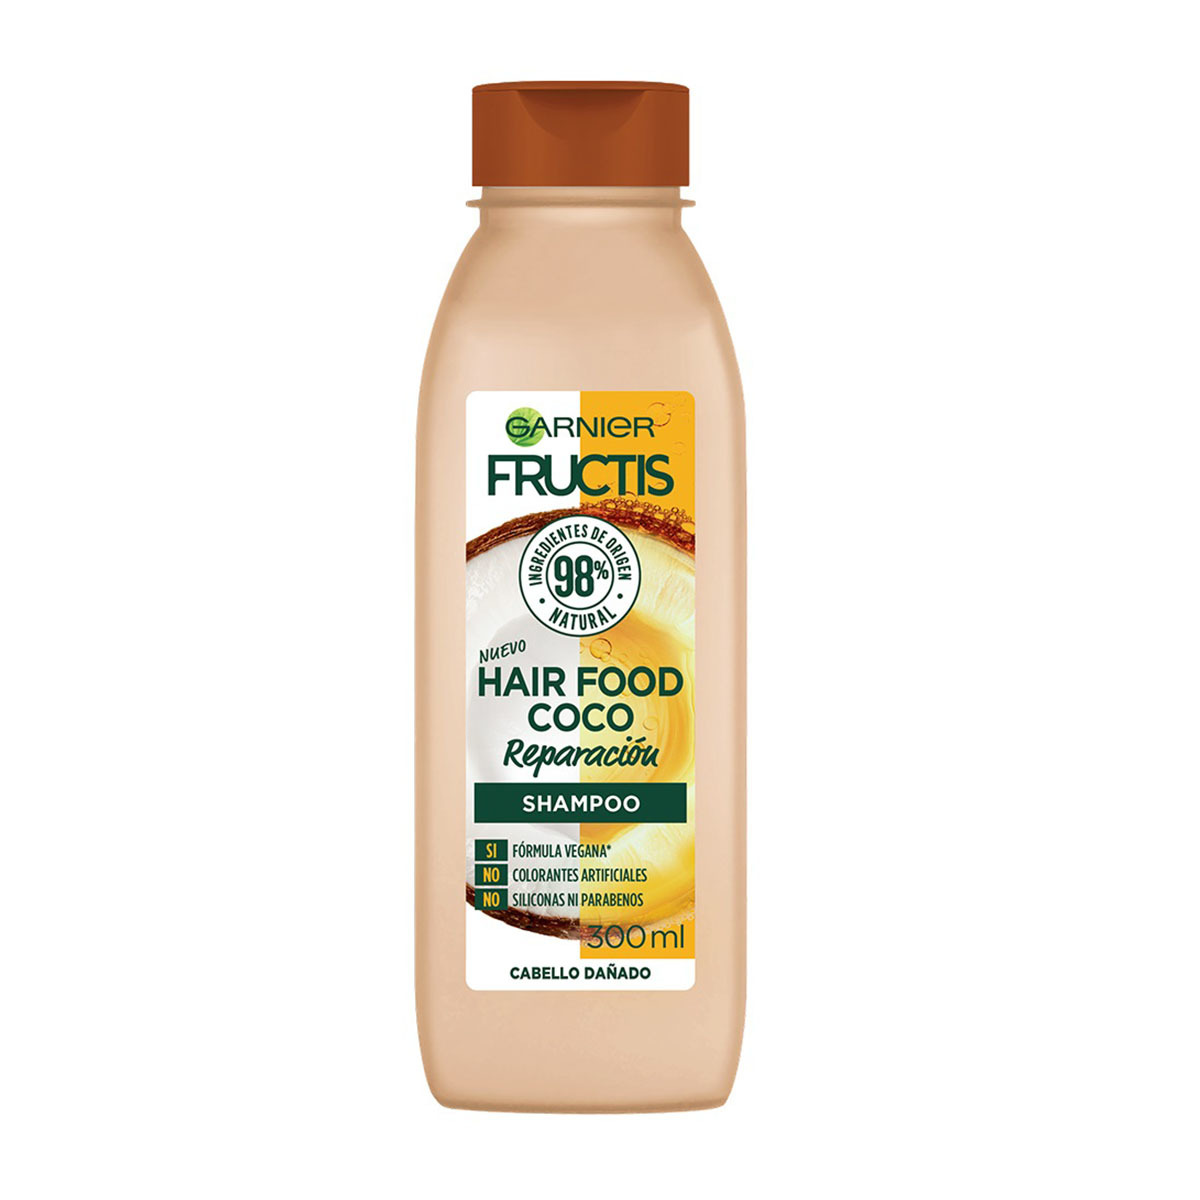 Shampoo Fructis Hair Food Coco en canasta en casa